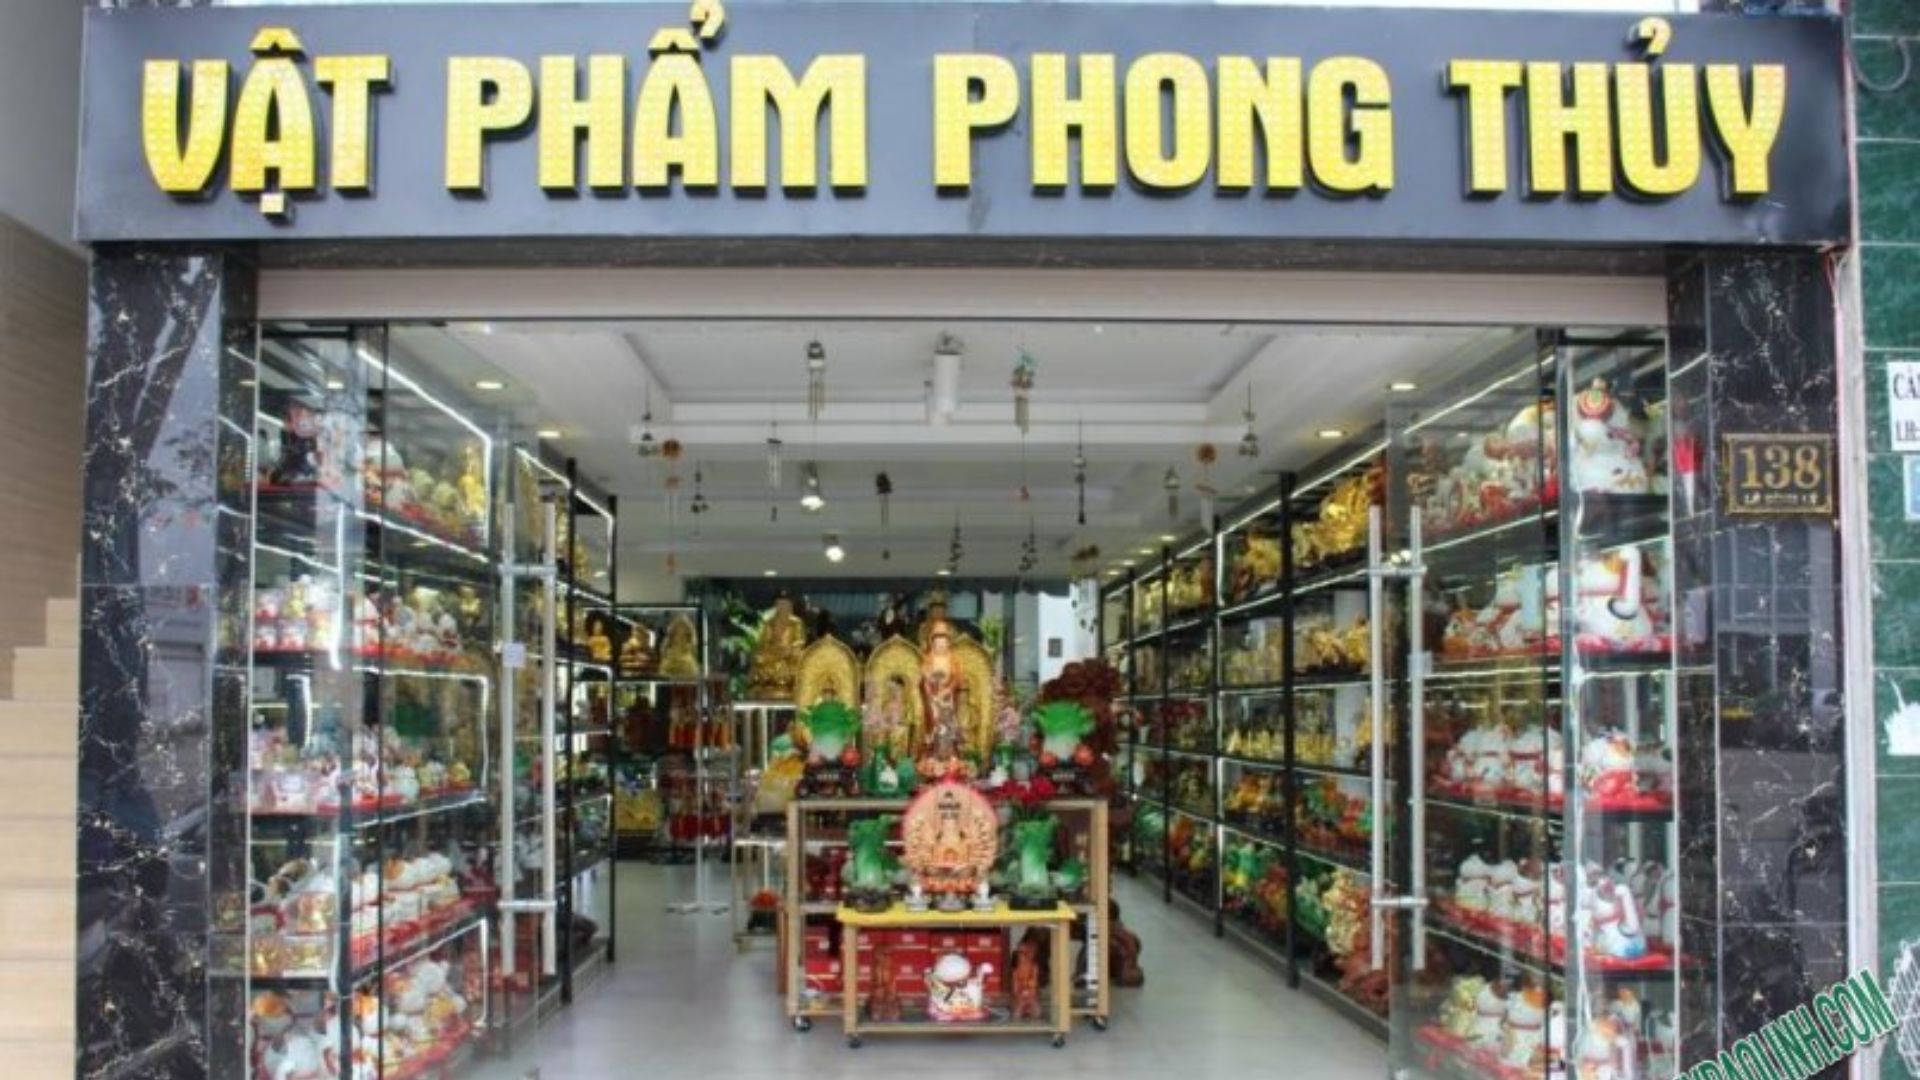 Bảo Linh - Cửa hàng phong thủy nổi tiếng ở Đà Nẵng